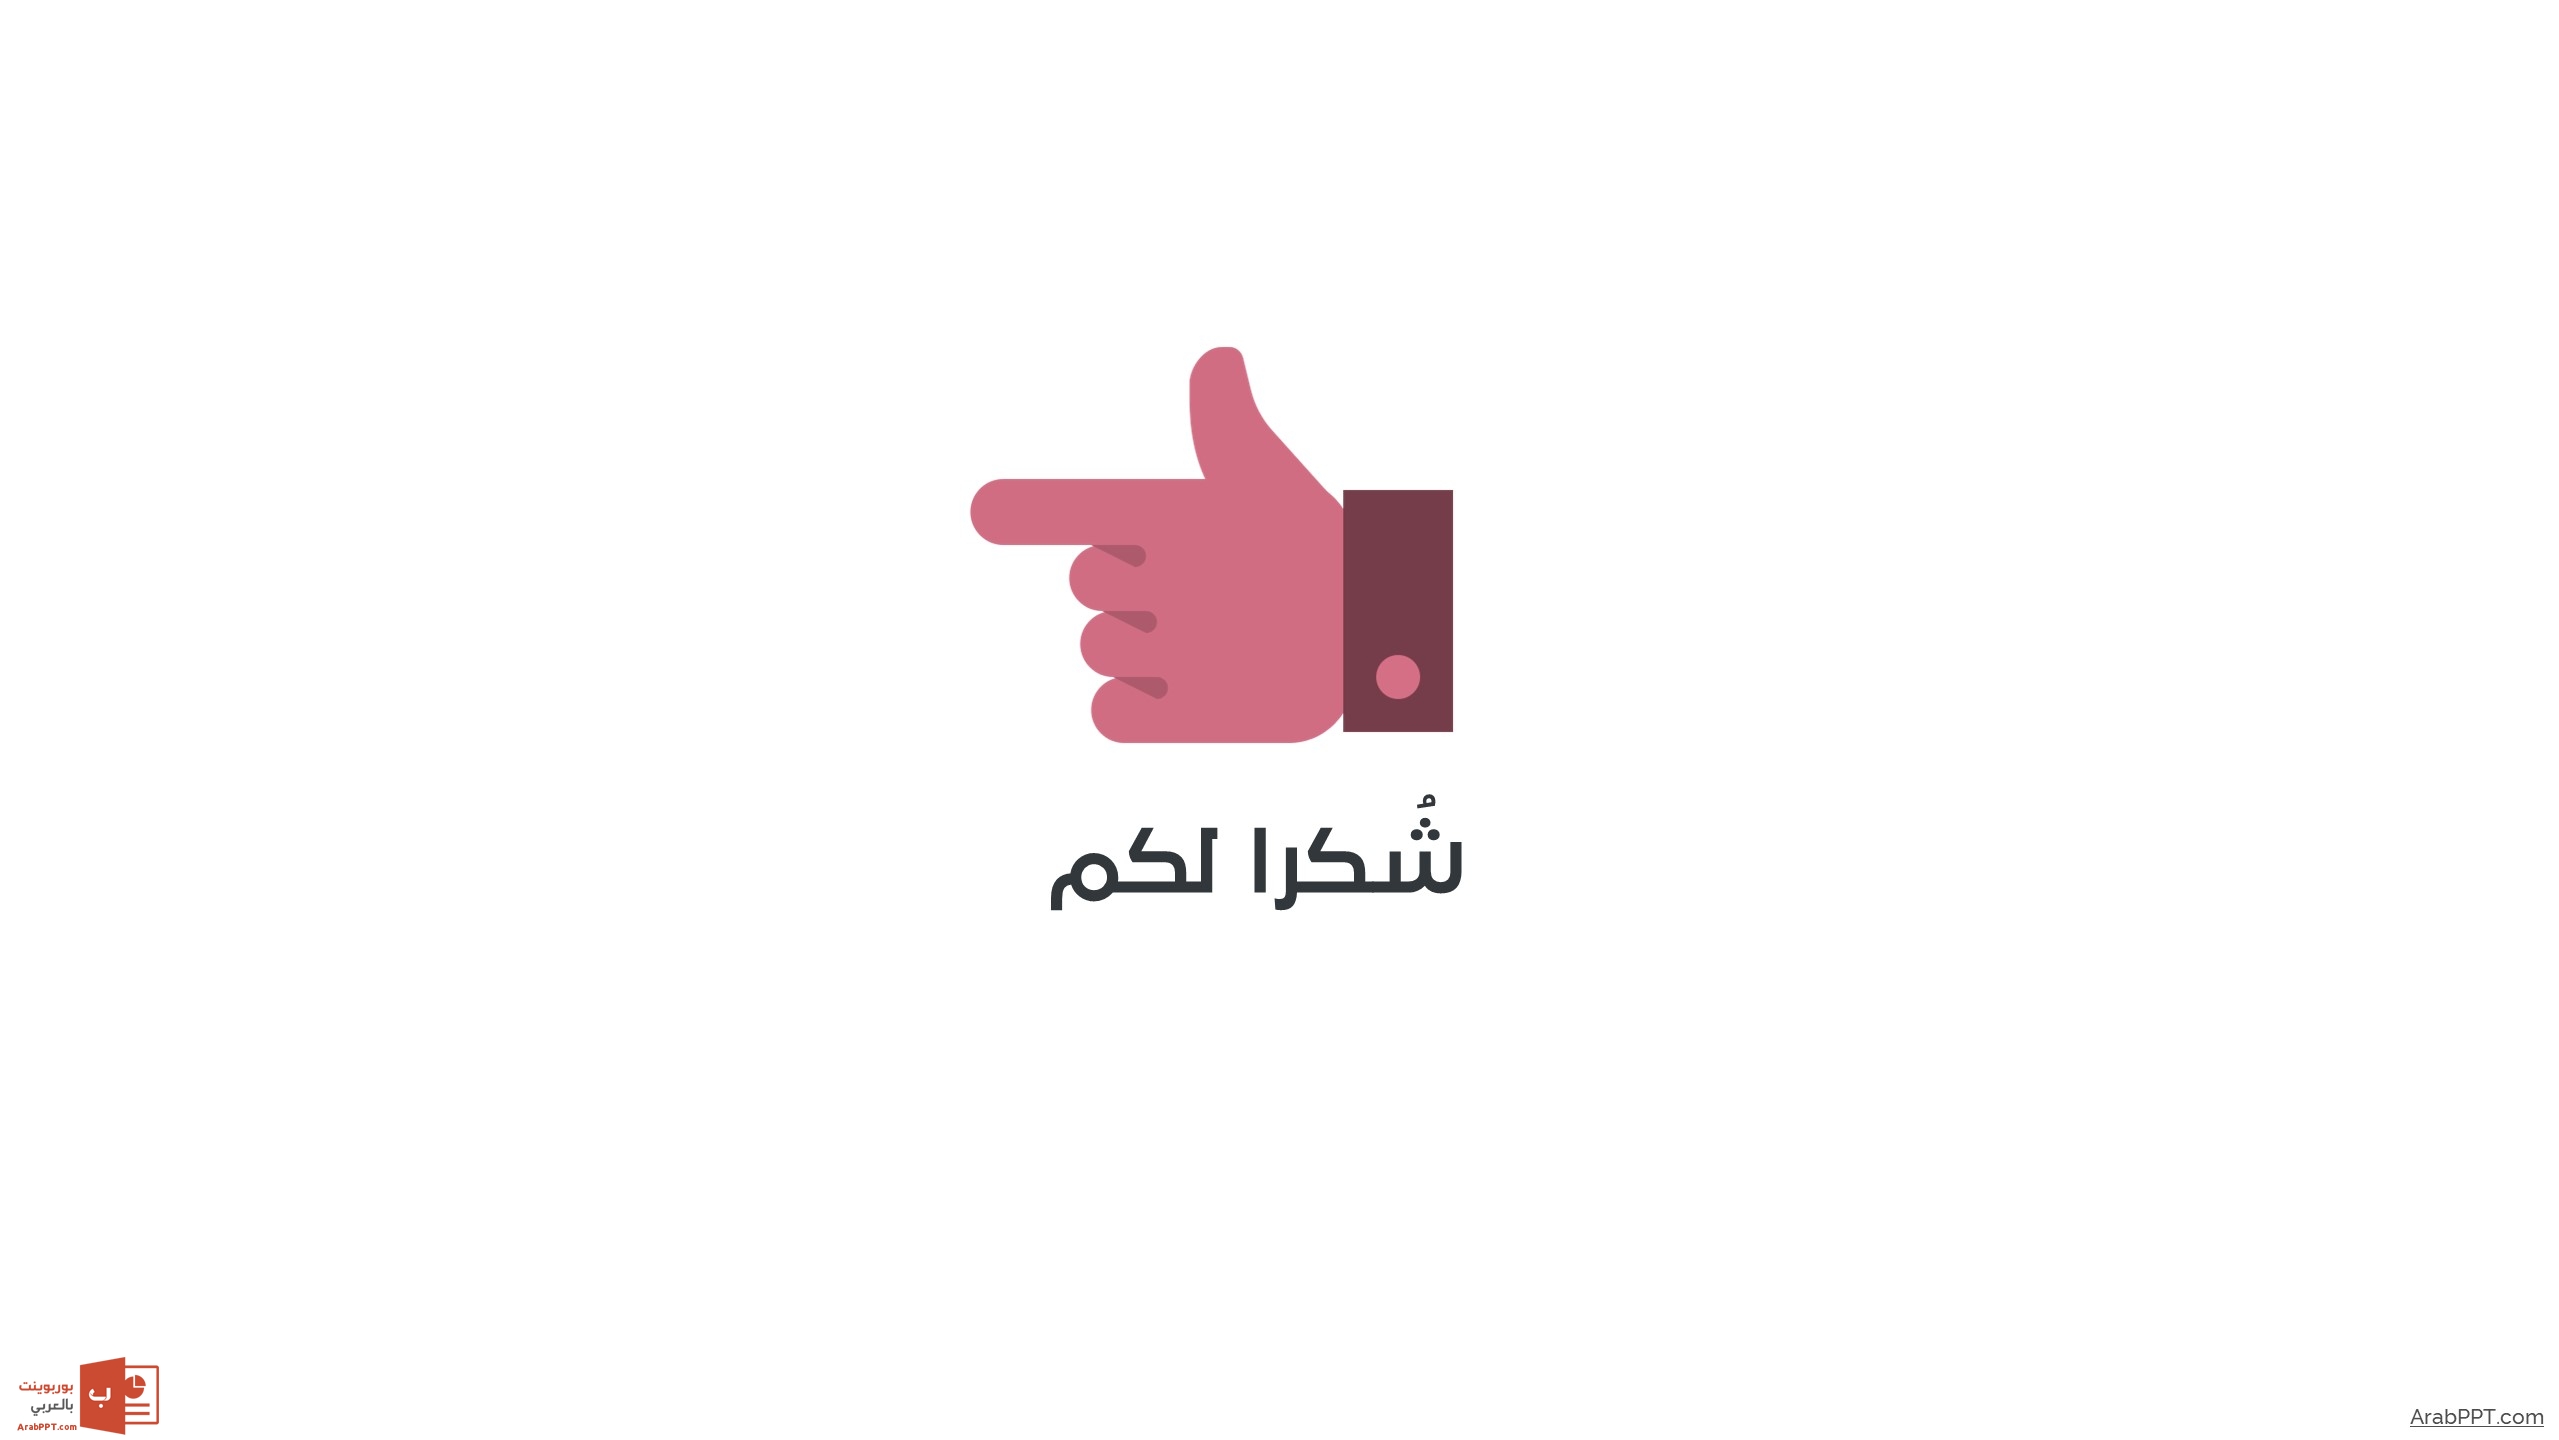 Slide25 قالب مينيمال – عرض بوربوينت احترافي ومميز للأعمال بالعربي ومجانا